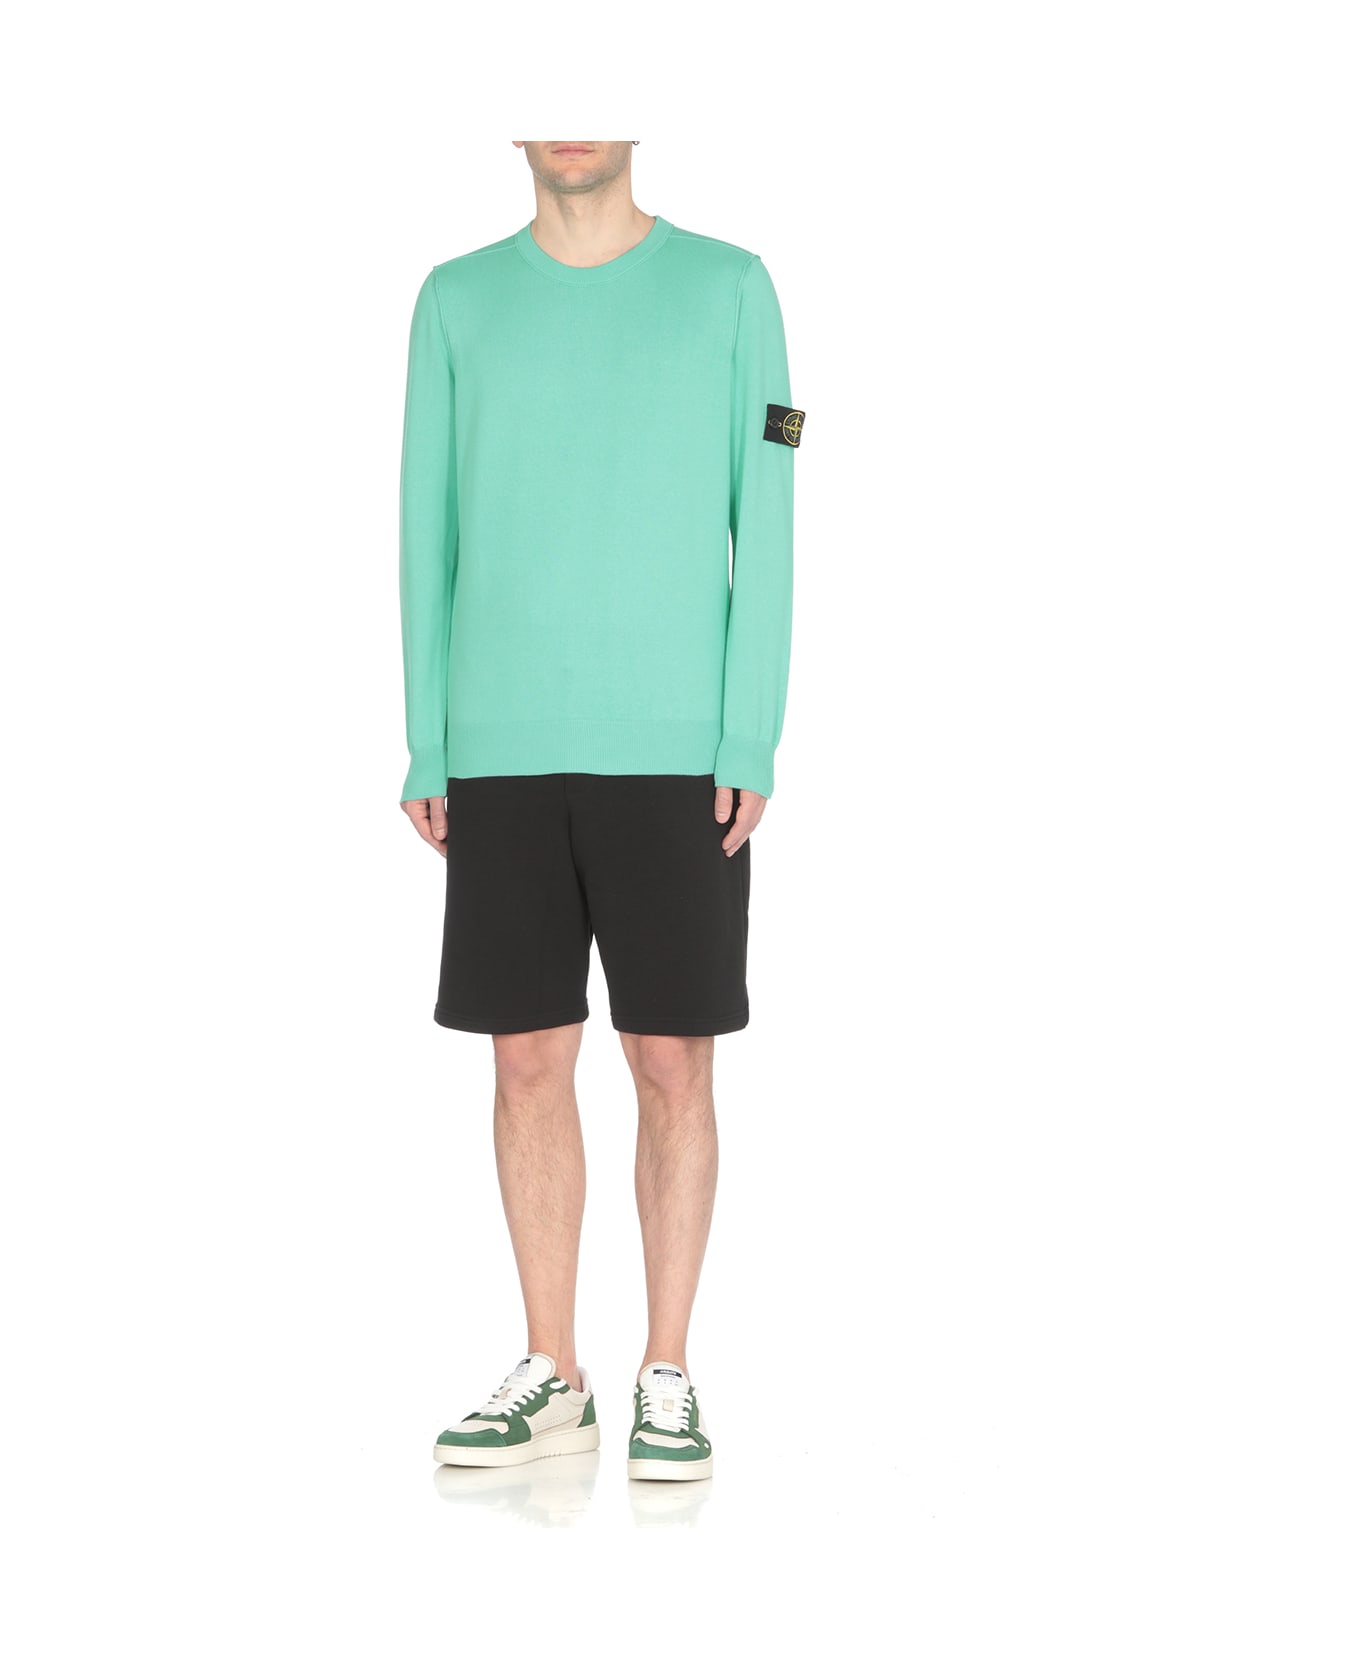 Stone Island Cotton Sweater - Verde chiaro